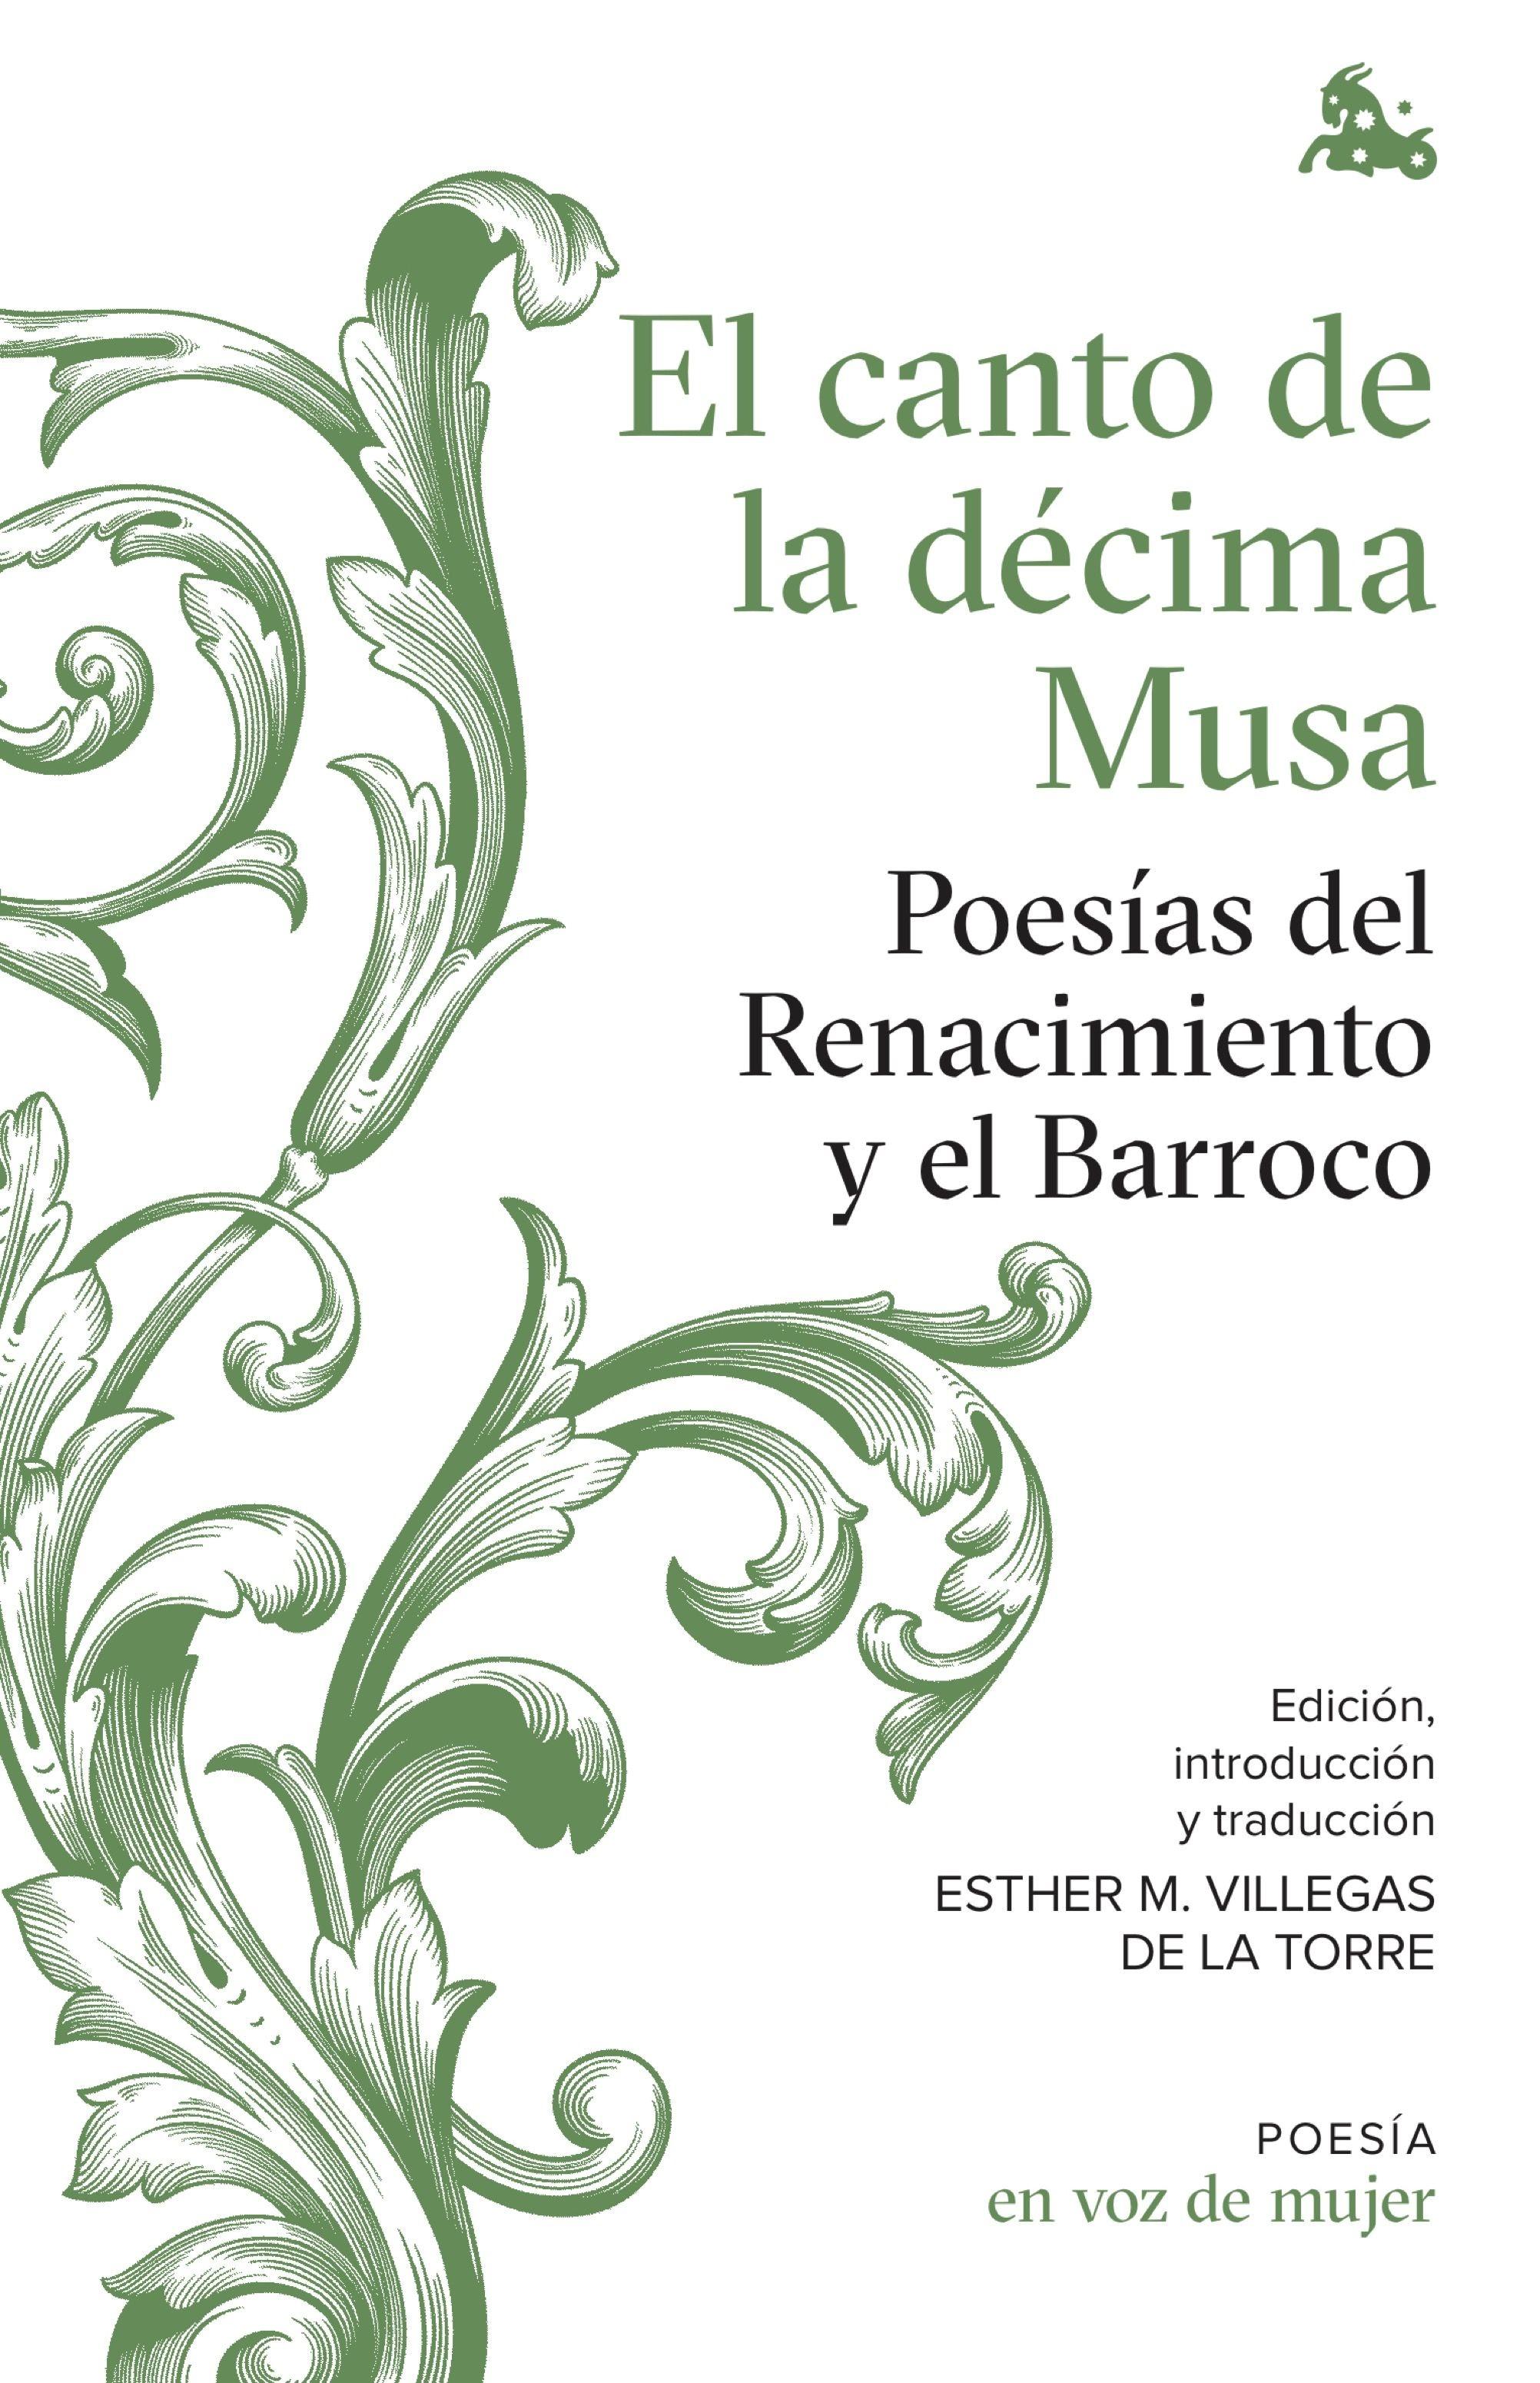 El canto de la décima Musa. Poesías del Renacimiento y el Barroco "Edición, introducción y traducción a cargo de Esther Villegas". 